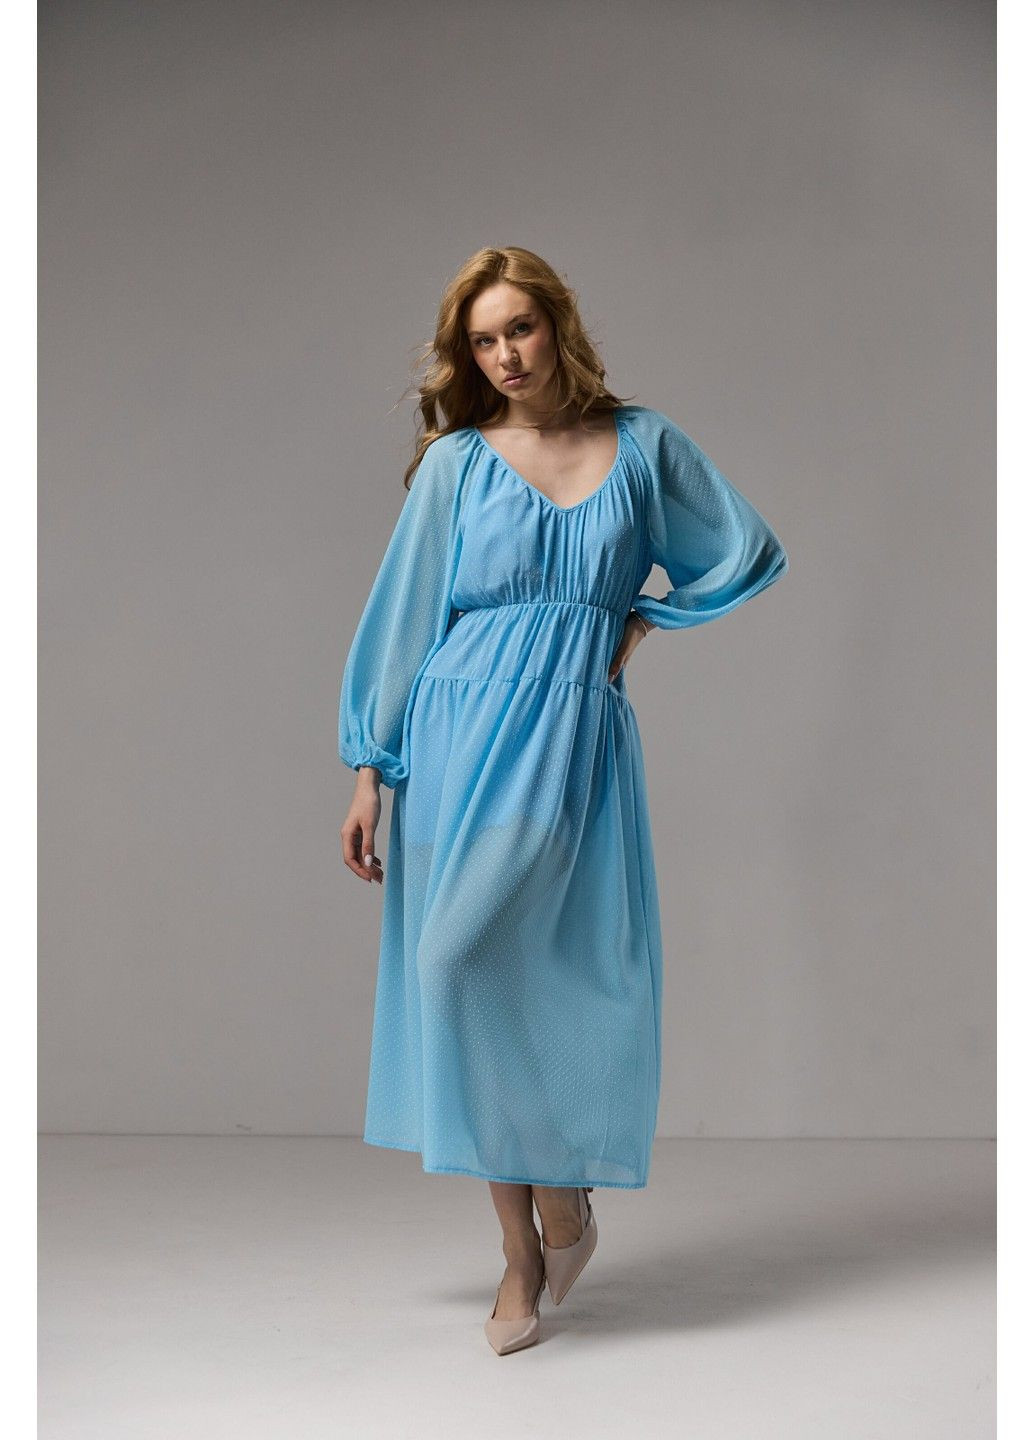 Голубое платье меди из нежного шифона голубое Bessa